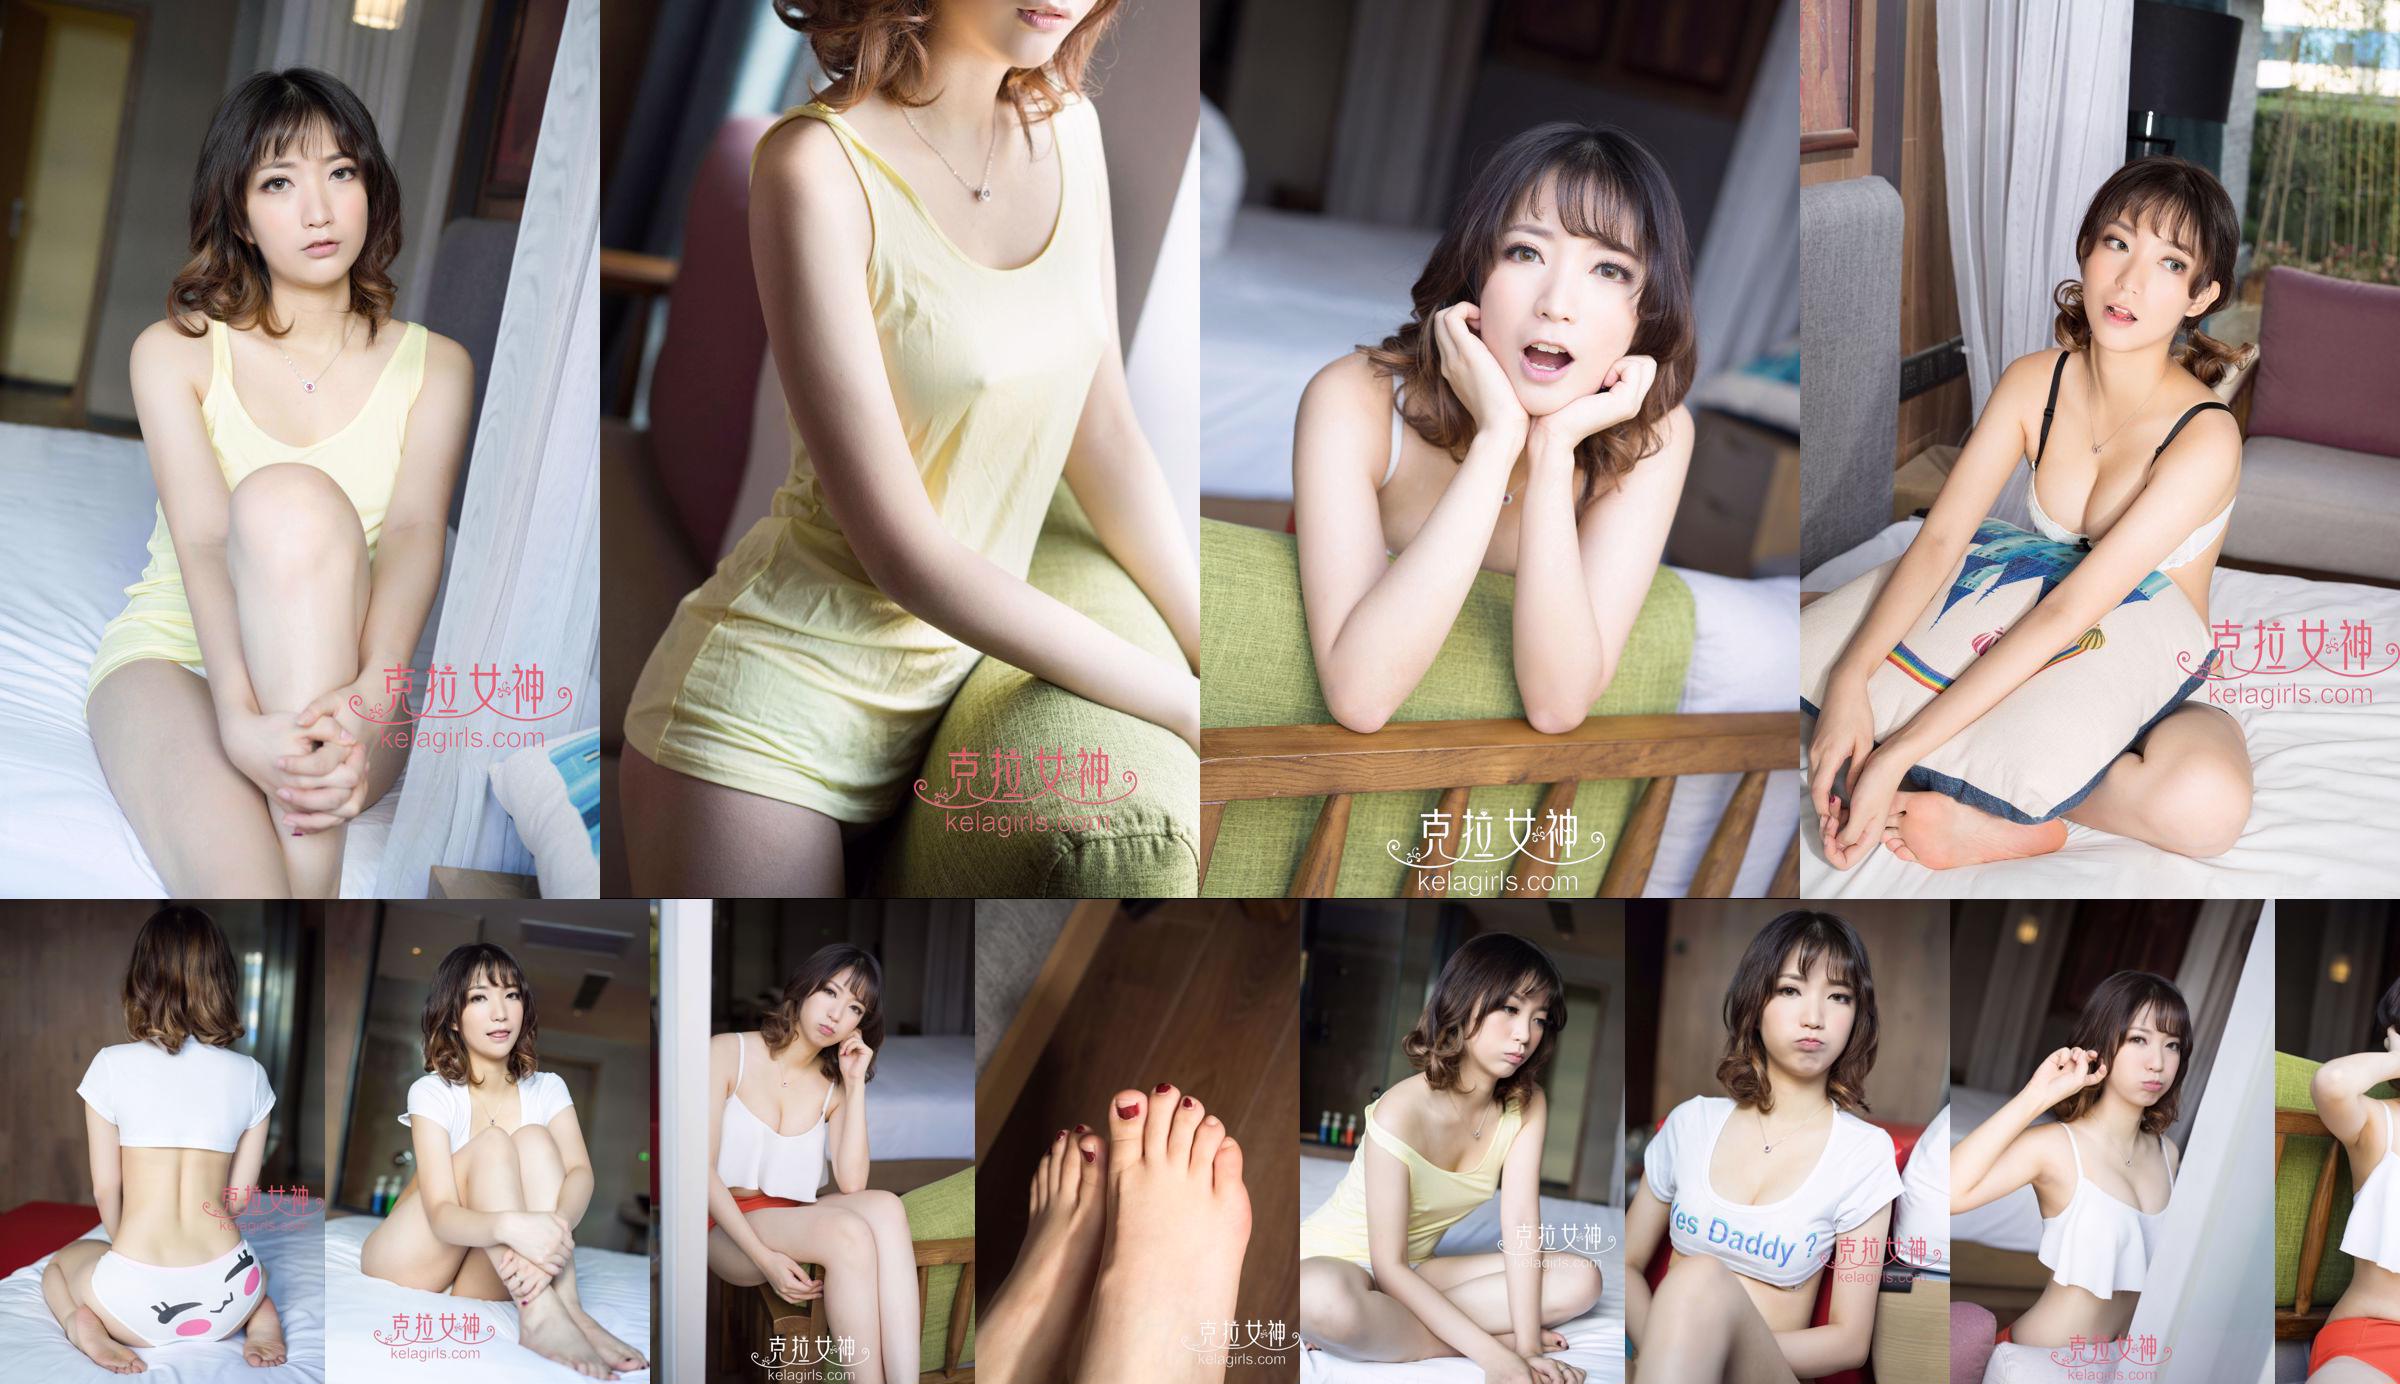 [丽柜Ligui] Network Beauty Model Nana No.c20408 Page 2